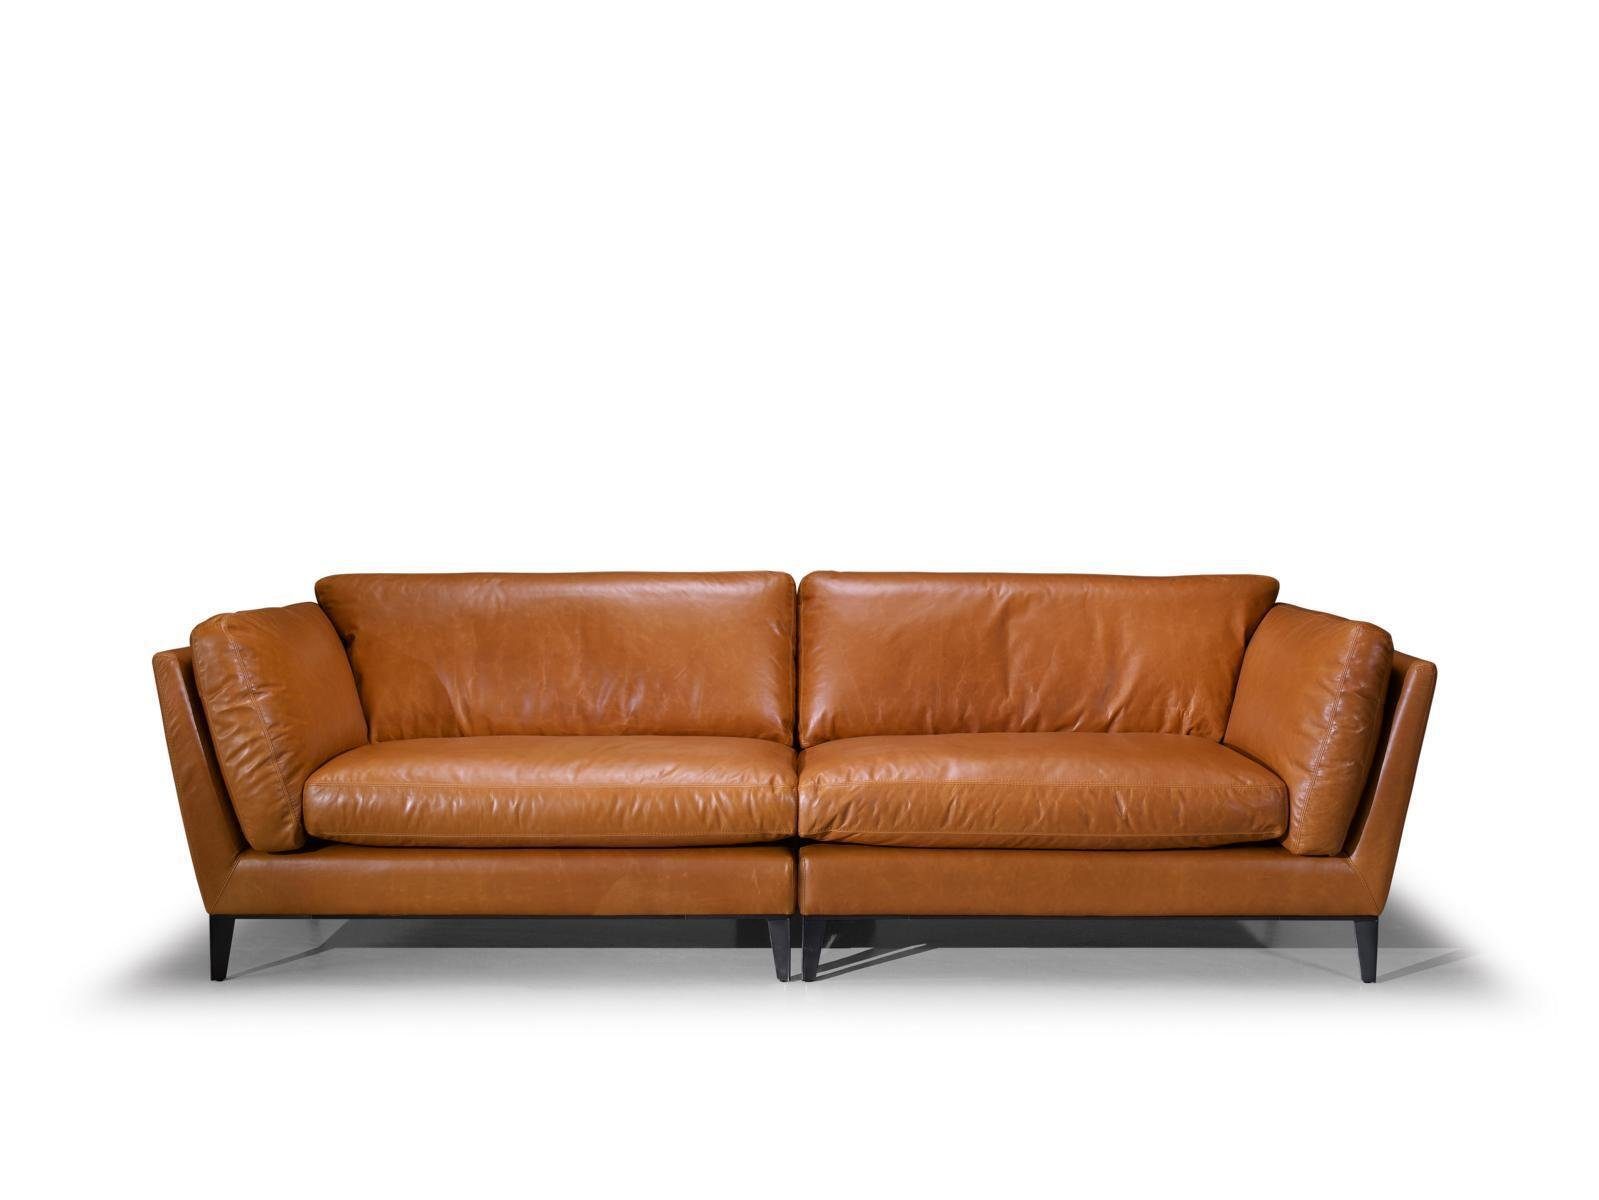 JVmoebel Sofa Sofa 3 Sitzer Braun Luxus Design Möbel Wohnzimmer Möbel Leder